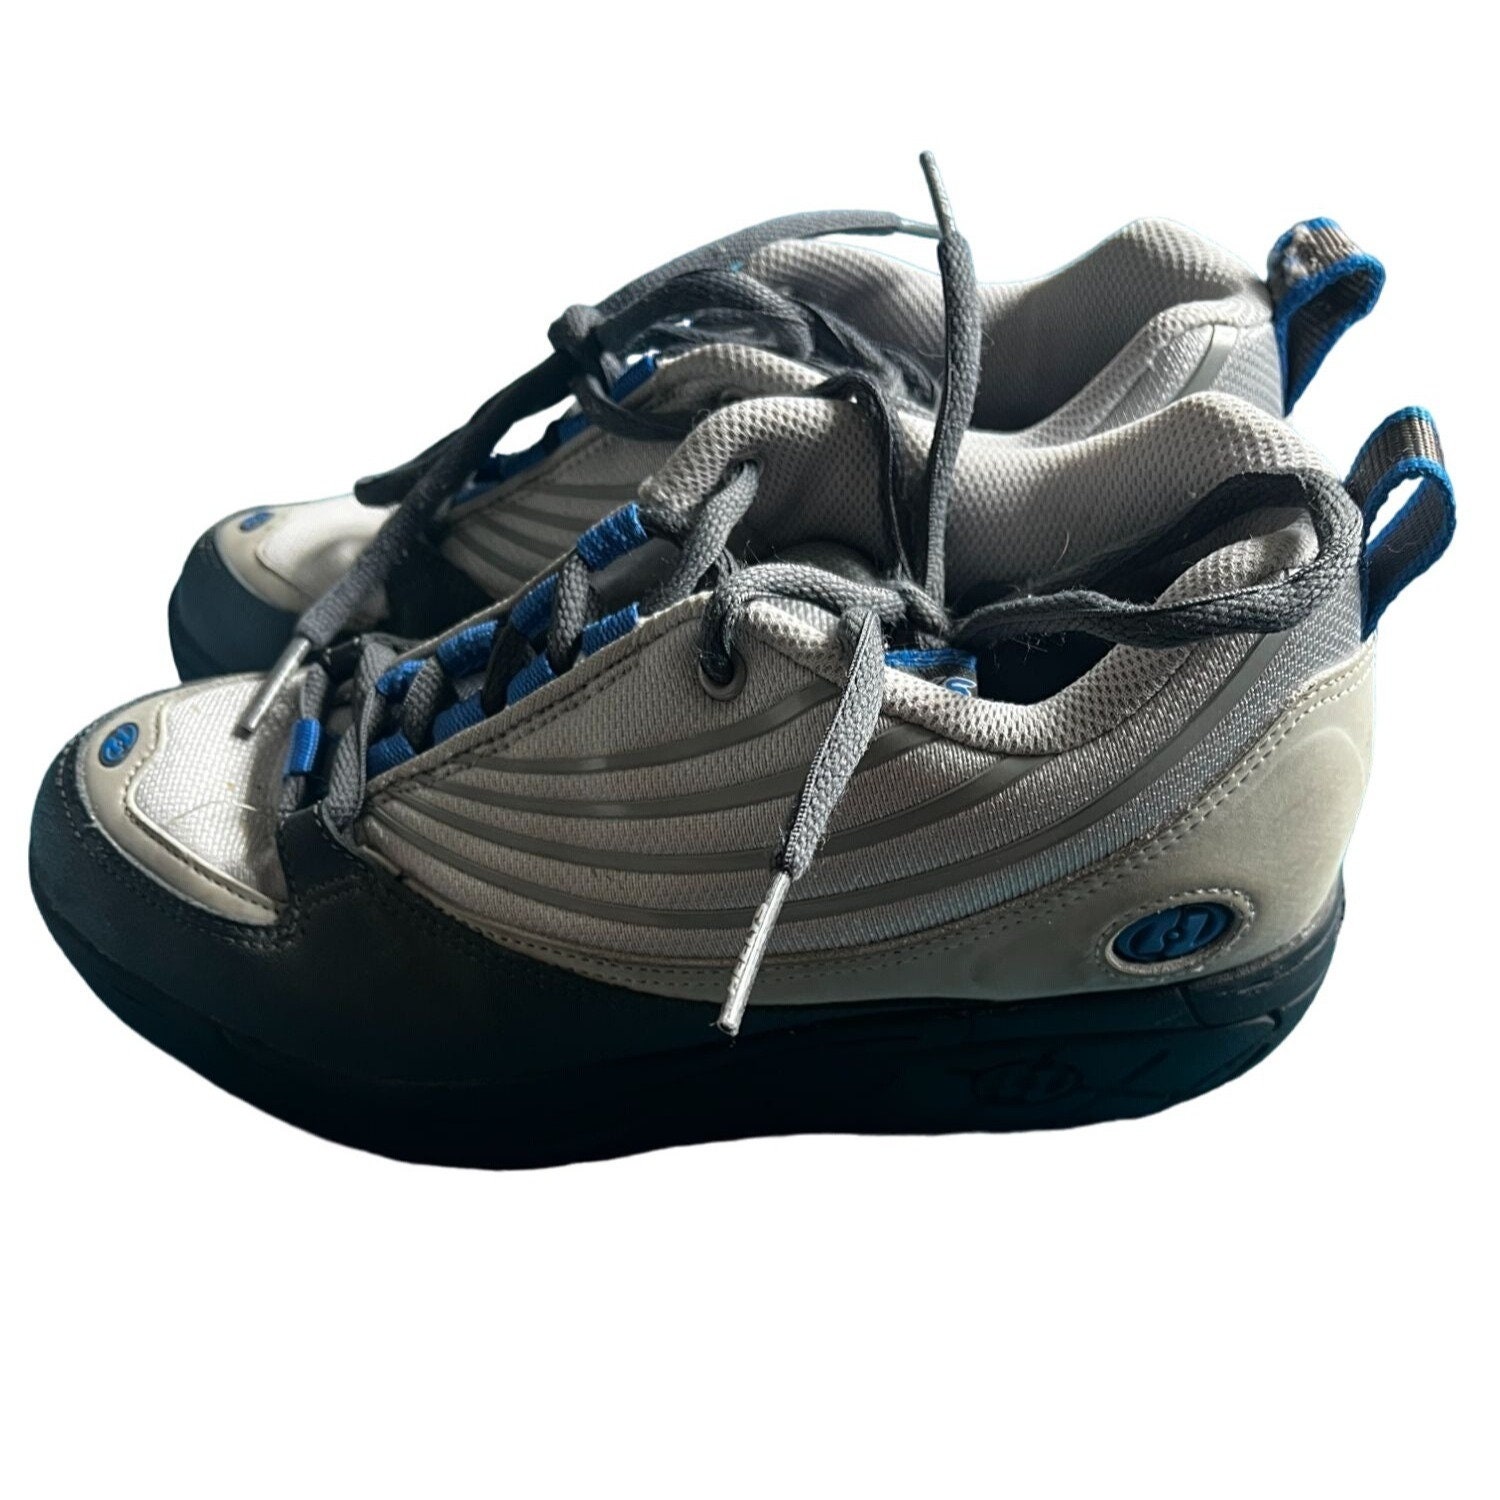 Heelys Wheels Sneakers / Kids Heelys Shoes / Heelys X2 Sneakers for Kids /  Kix With Wheels / Sneakers With Wheels / Heelys Dual up Sneakers 